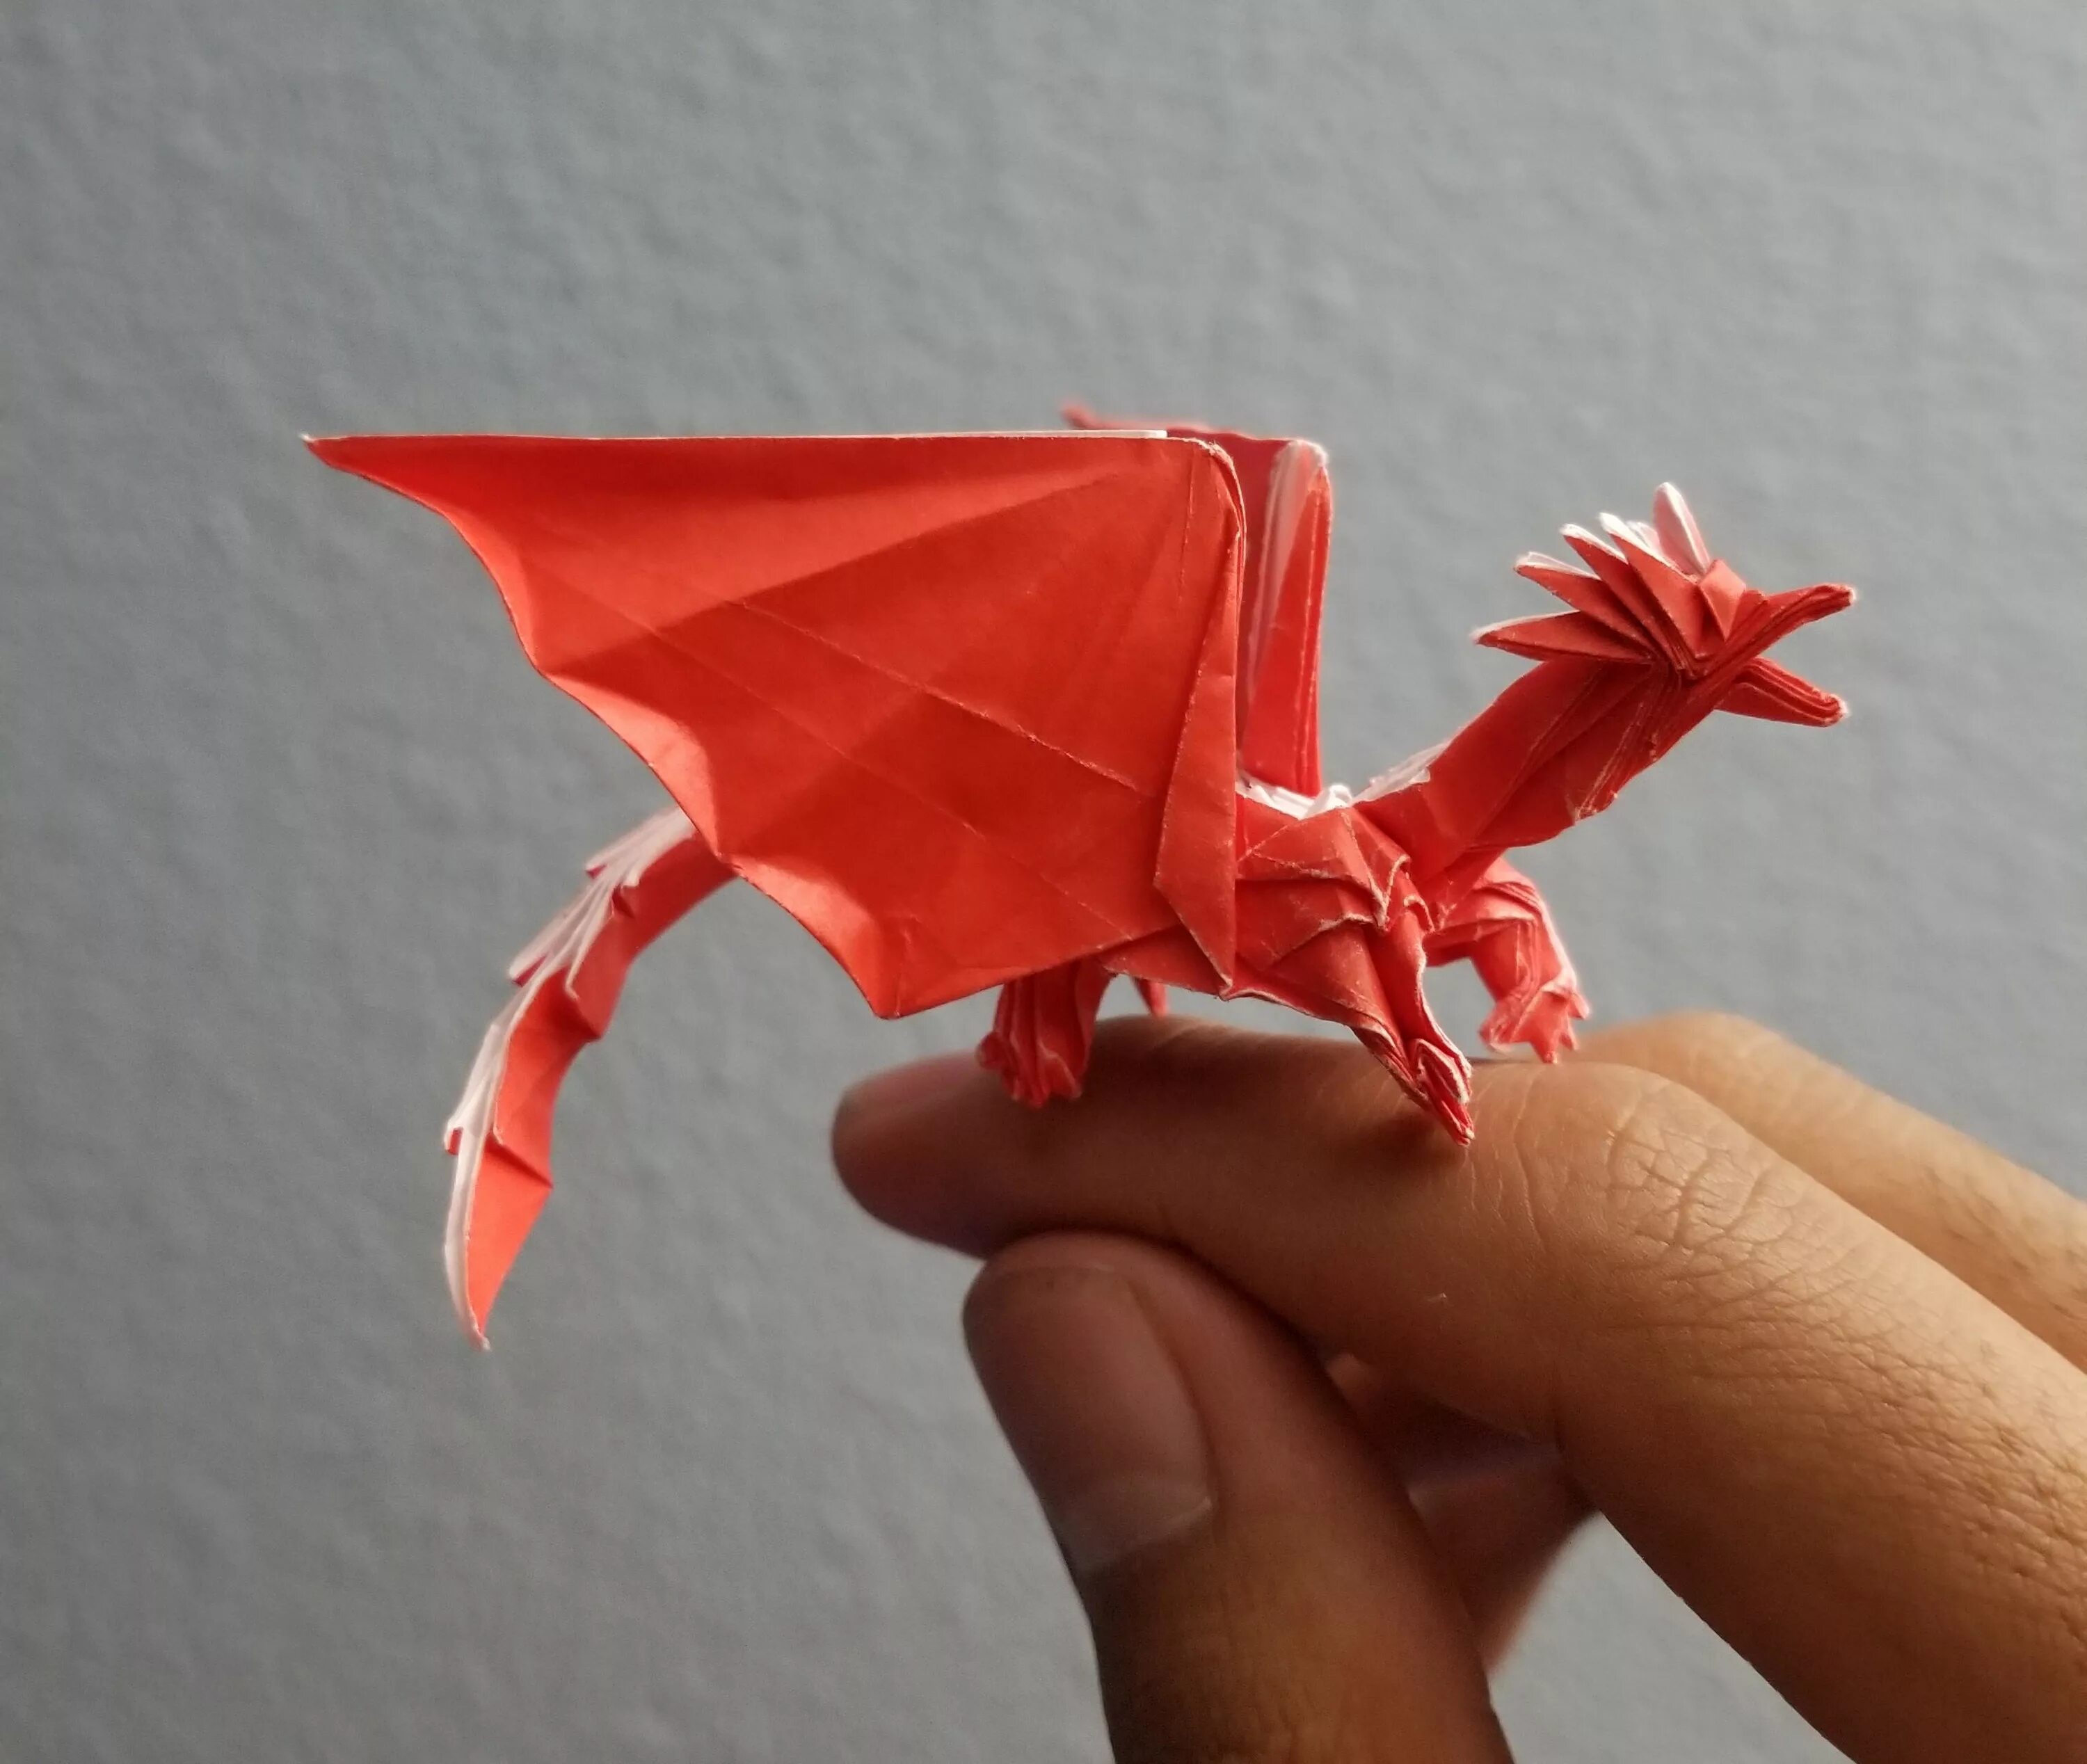 Дракон из бумаги без клея. Оригами дракон сатоши Камия. Дракон Корри оригами. Бумажные драконы на руку. Поделка дракон из бумаги.